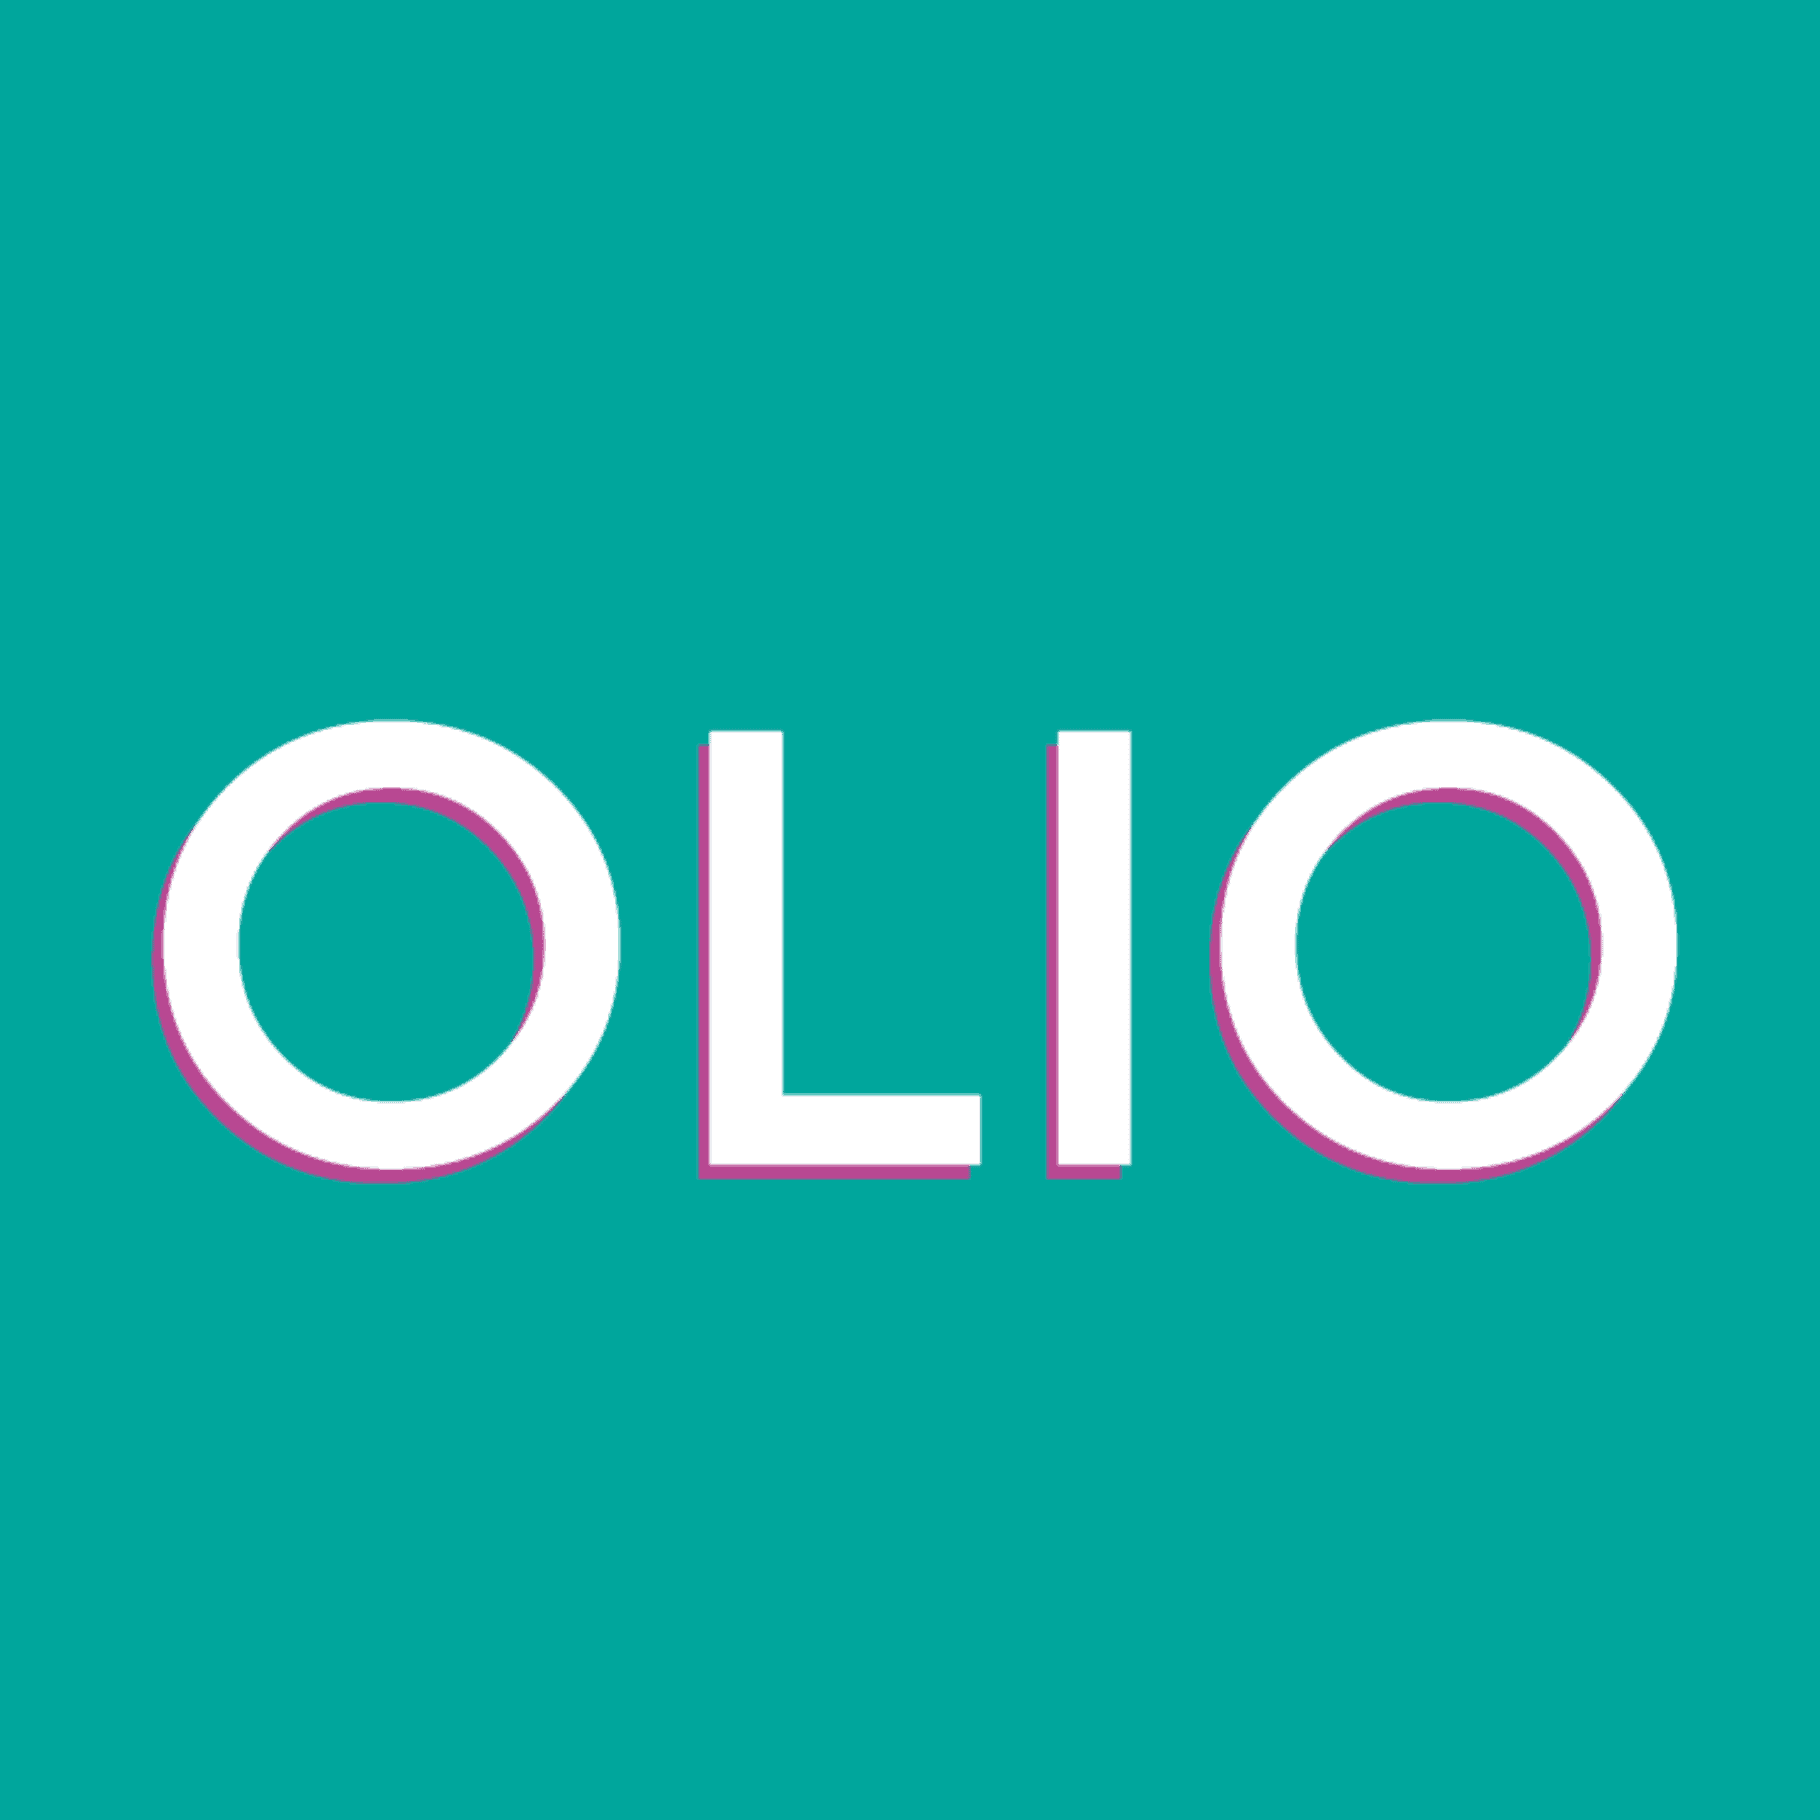 Olio's logo